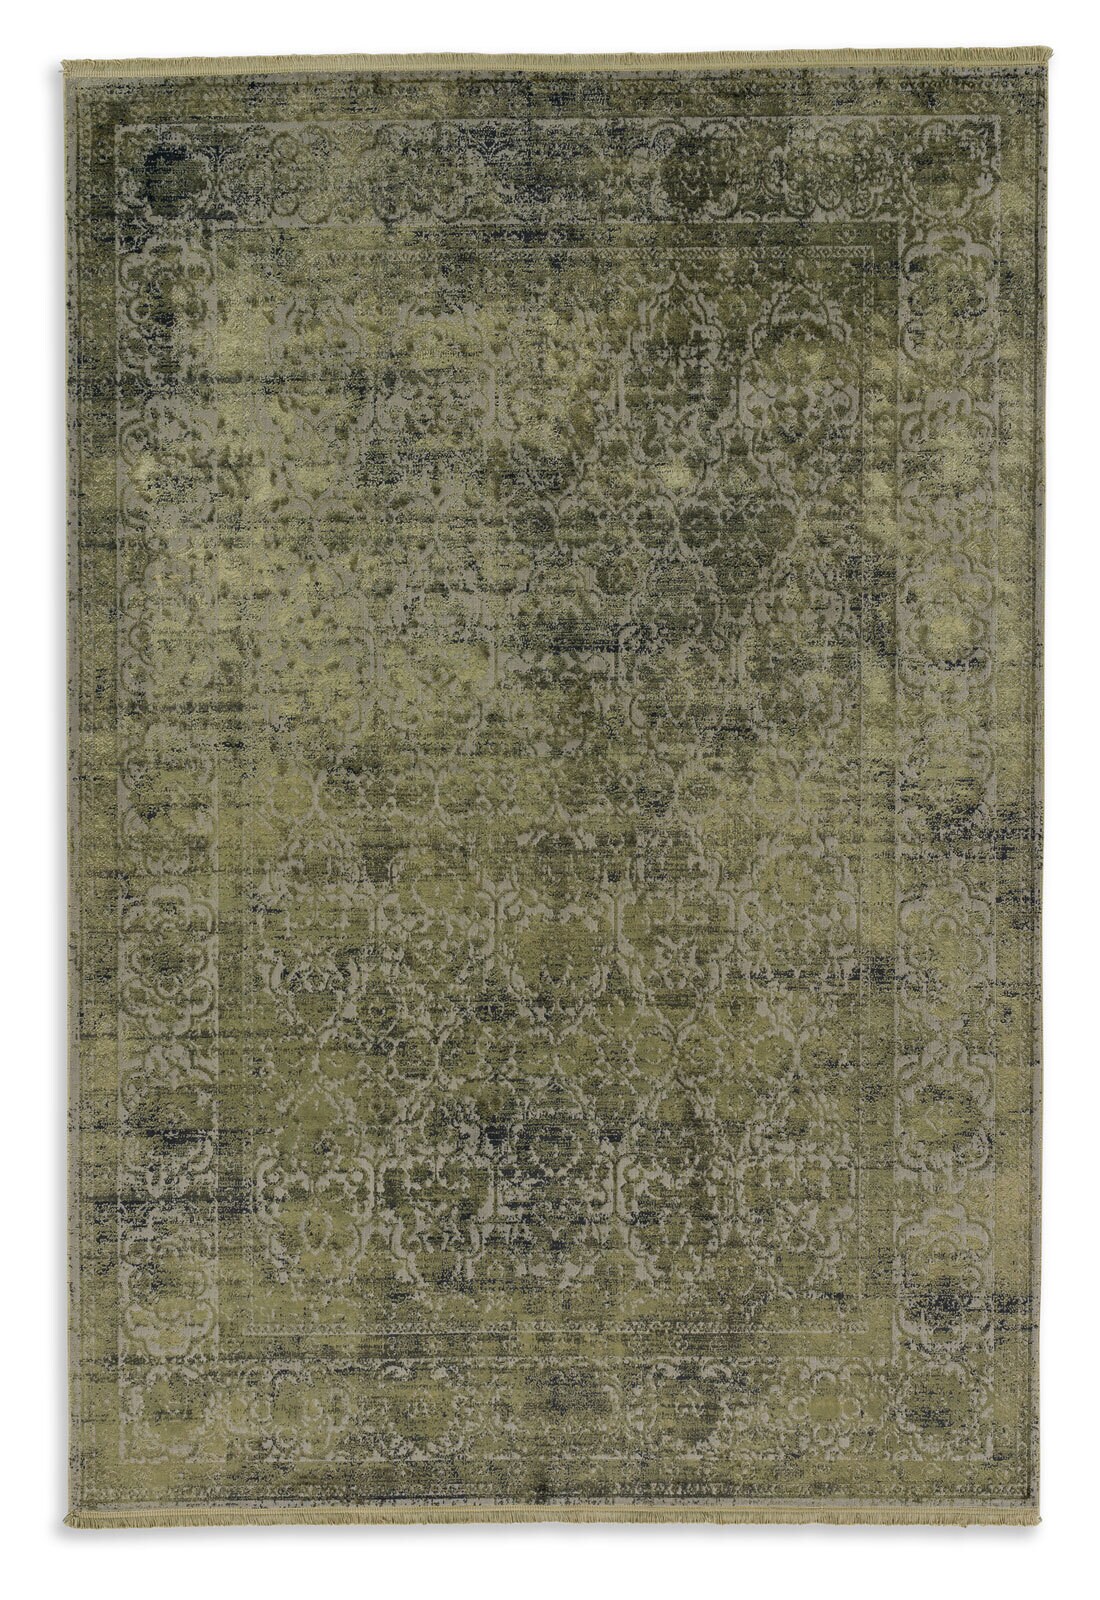 SCHÖNER WOHNEN-Kollektion Teppich VELVET 200 x 290 cm olivgrün